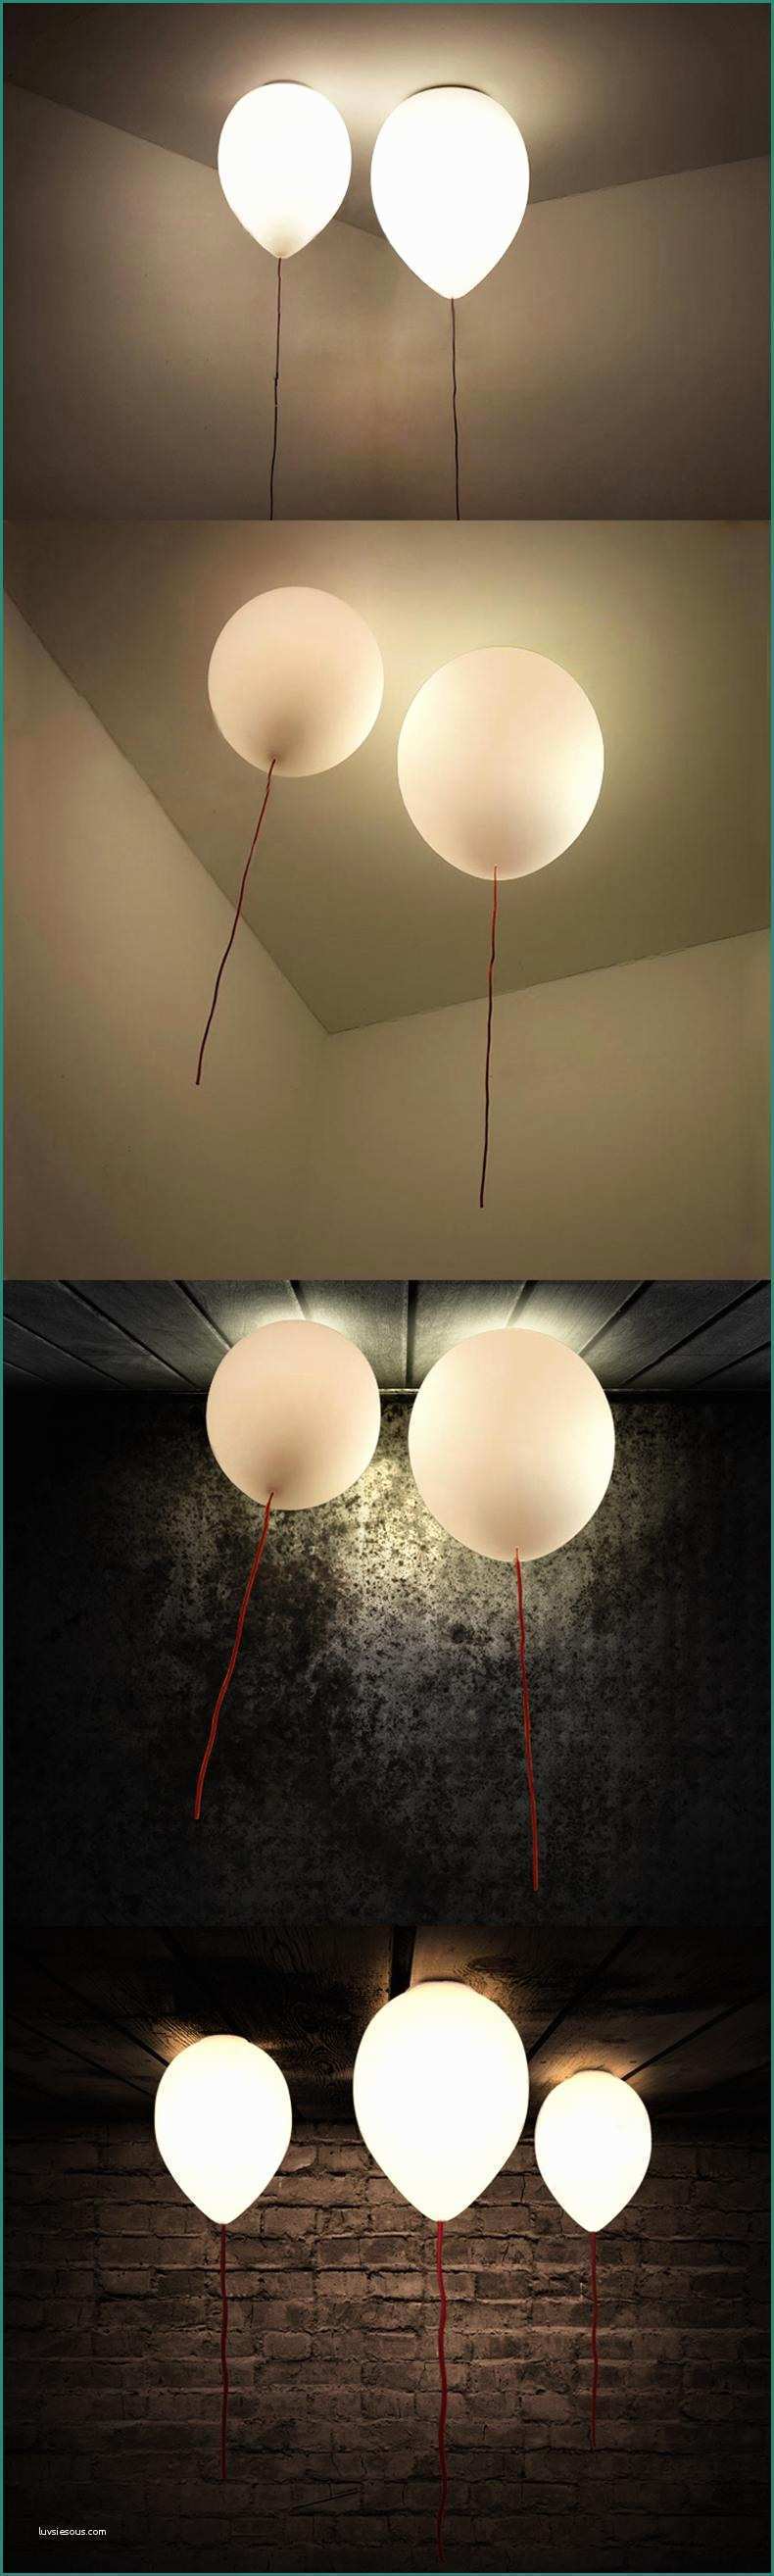 Illuminazione Casa Moderna E Acquista Calda Design Luce Di soffitto Ballon Lampada A soffitto A